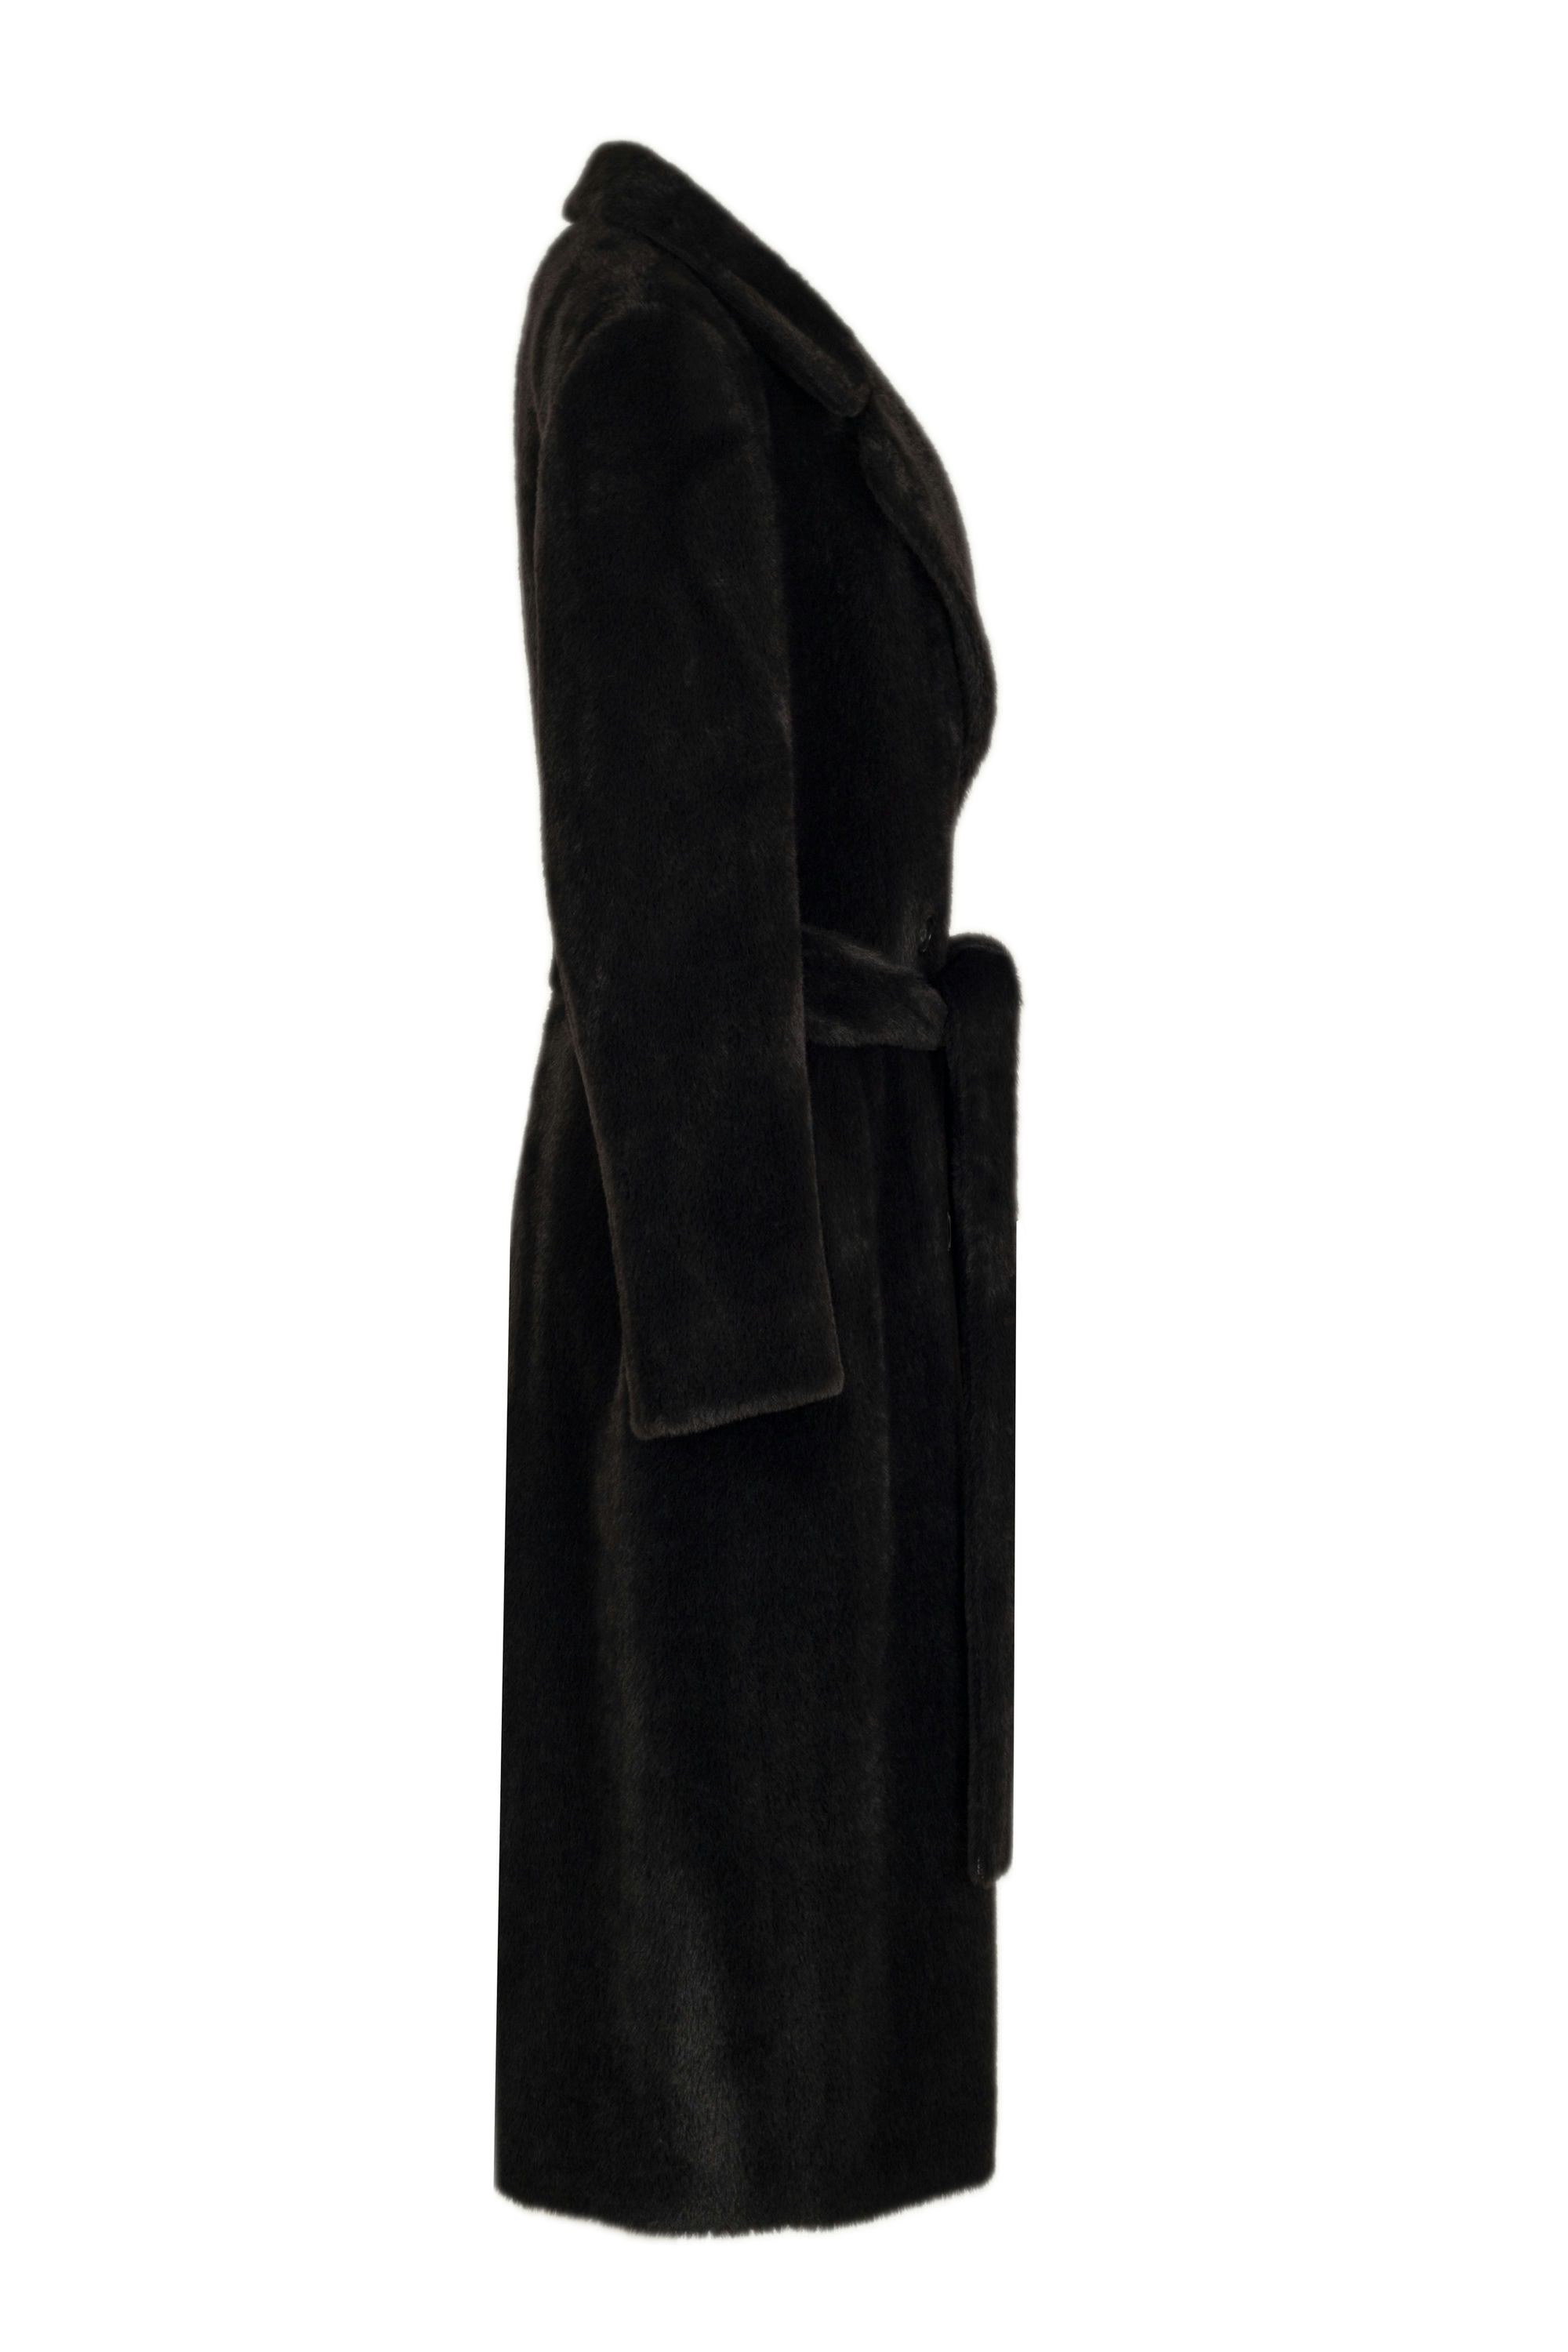 Пальто женское демисезонное 1-13053-2. Фото 2.